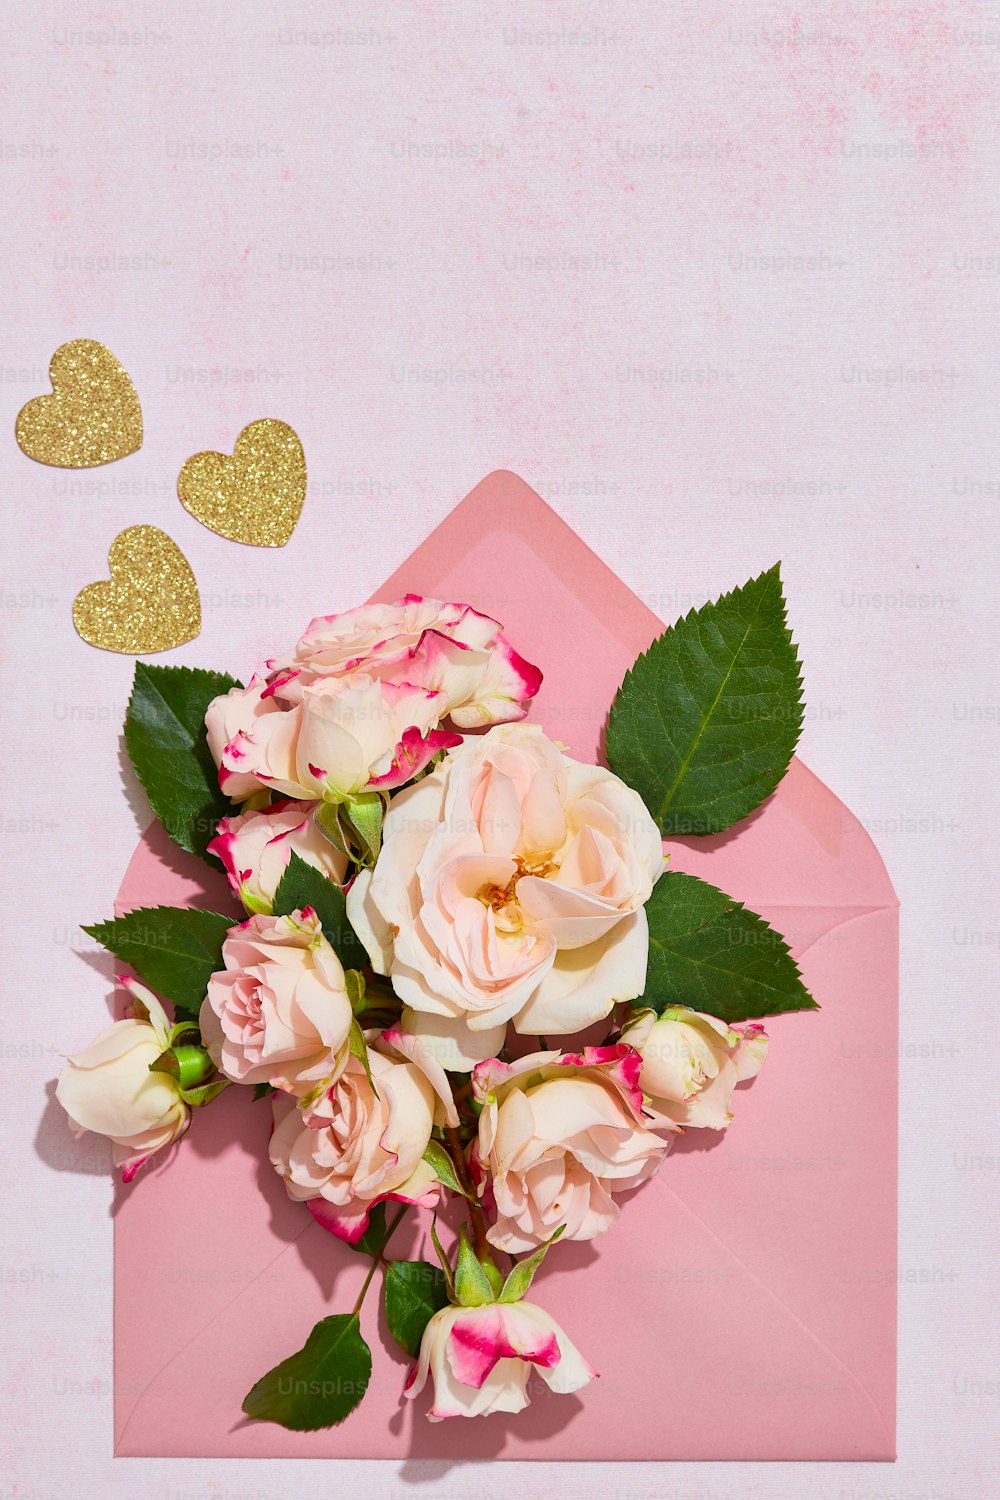 une enveloppe rose avec un bouquet de roses dessus